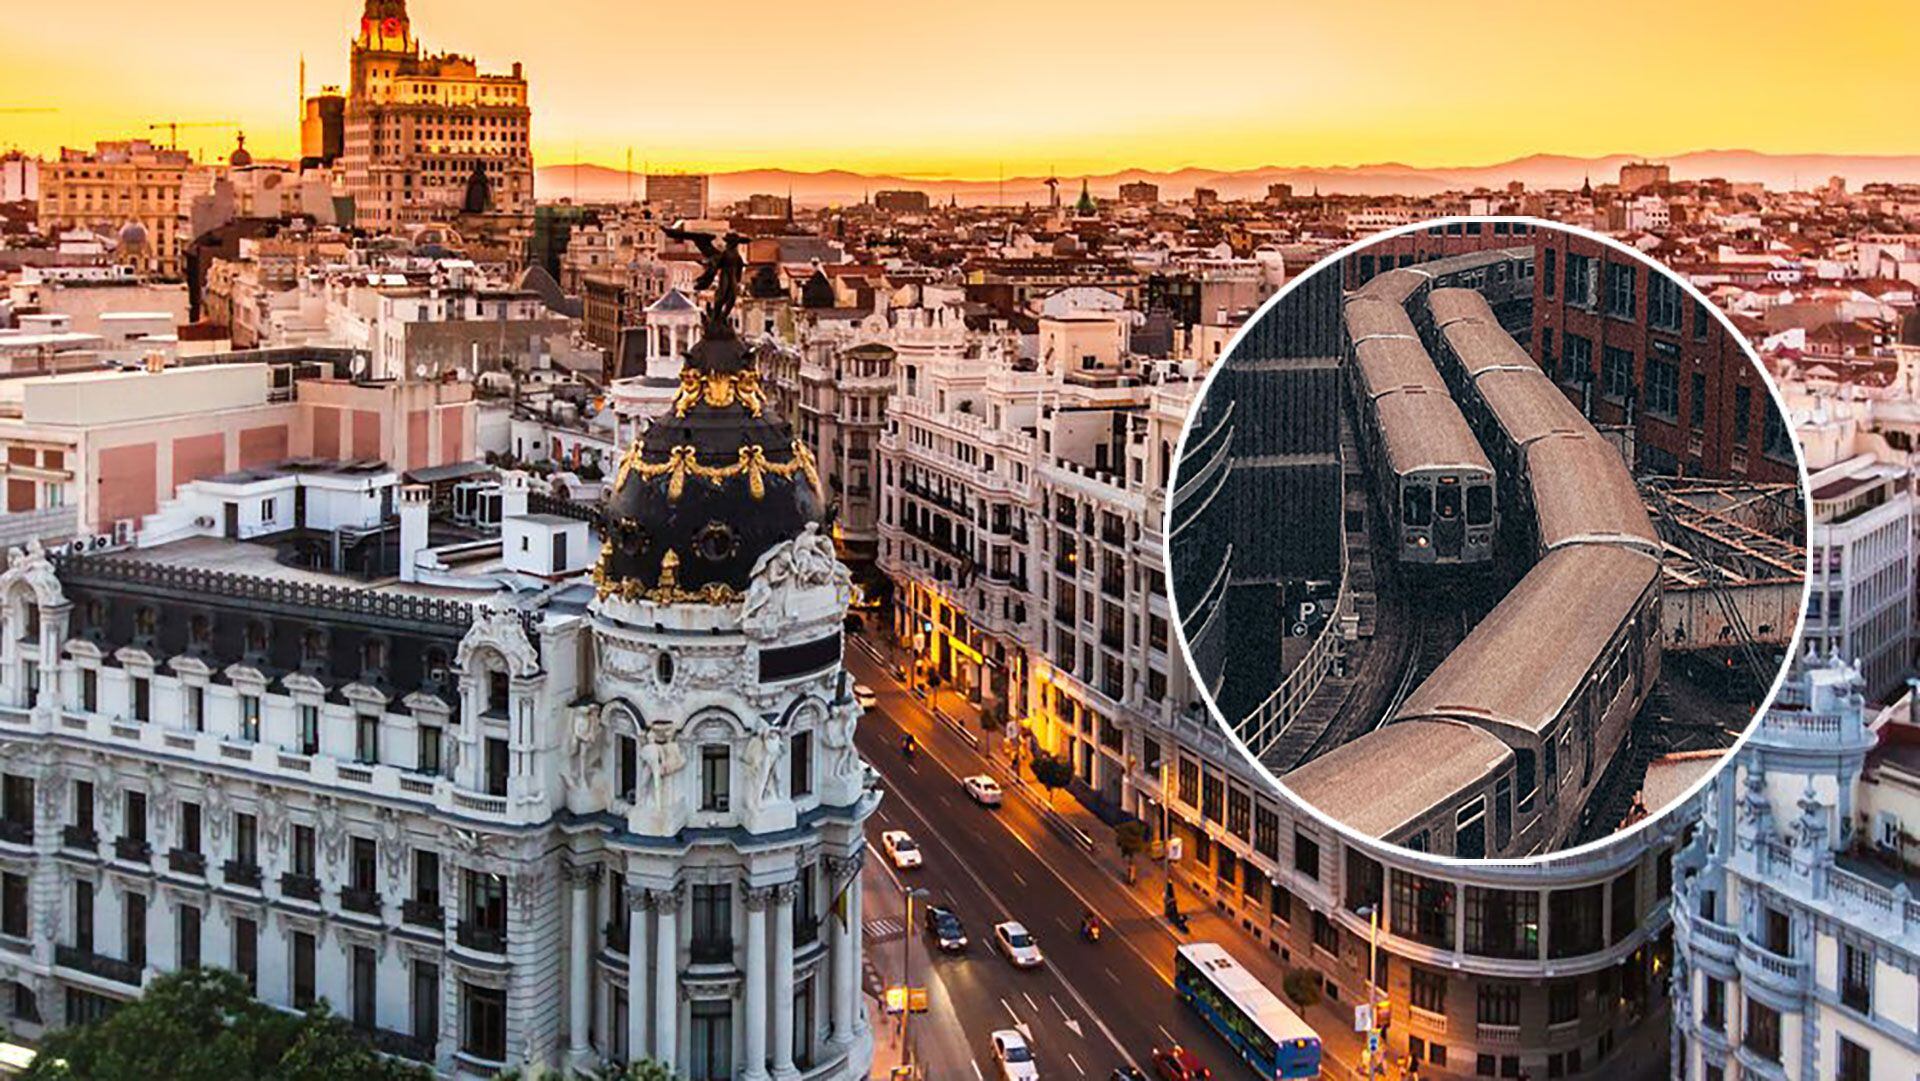 Alquilar un piso a 30 minutos en tren del centro de Madrid o Barcelona puede abaratar las rentas hasta 1.500€ al mes